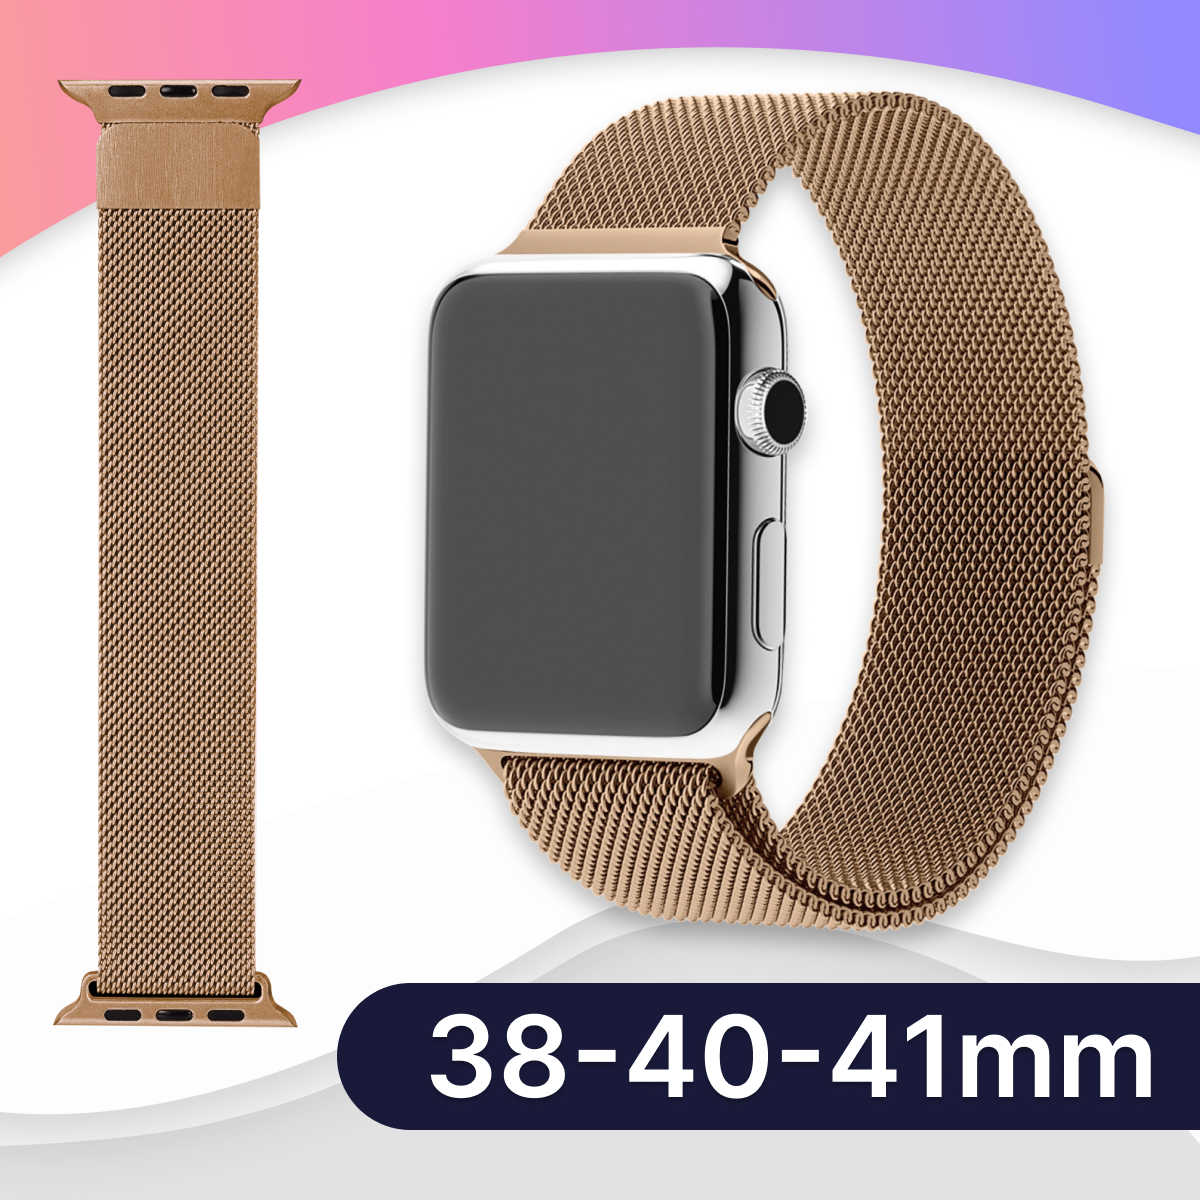 Ремешок миланская петля для Apple Watch 38-40-41 mm, Series 1-9, SE, Ultra / Металлический браслет для смарт часов Эпл Вотч 38-40-41, СЕ, 1-9, Ультра / Золотой